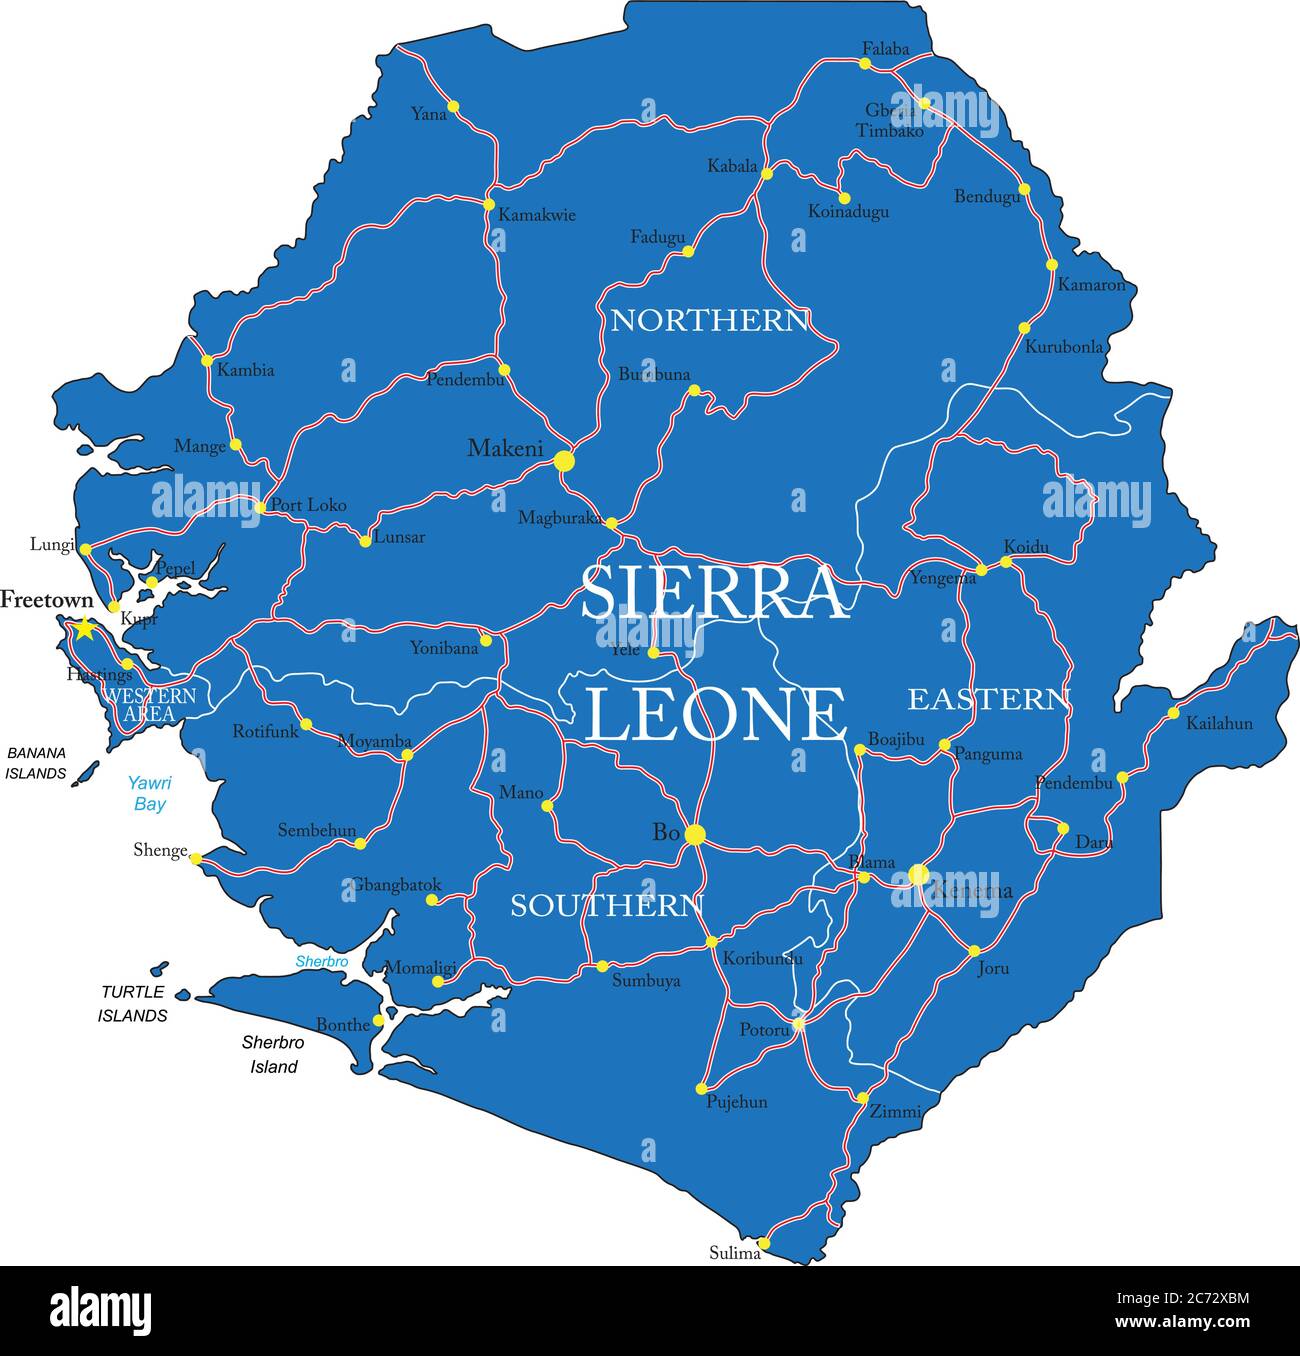 Sehr detaillierte Vektorkarte von Sierra Leone mit Verwaltungsregionen, Hauptstädten und Straßen. Stock Vektor